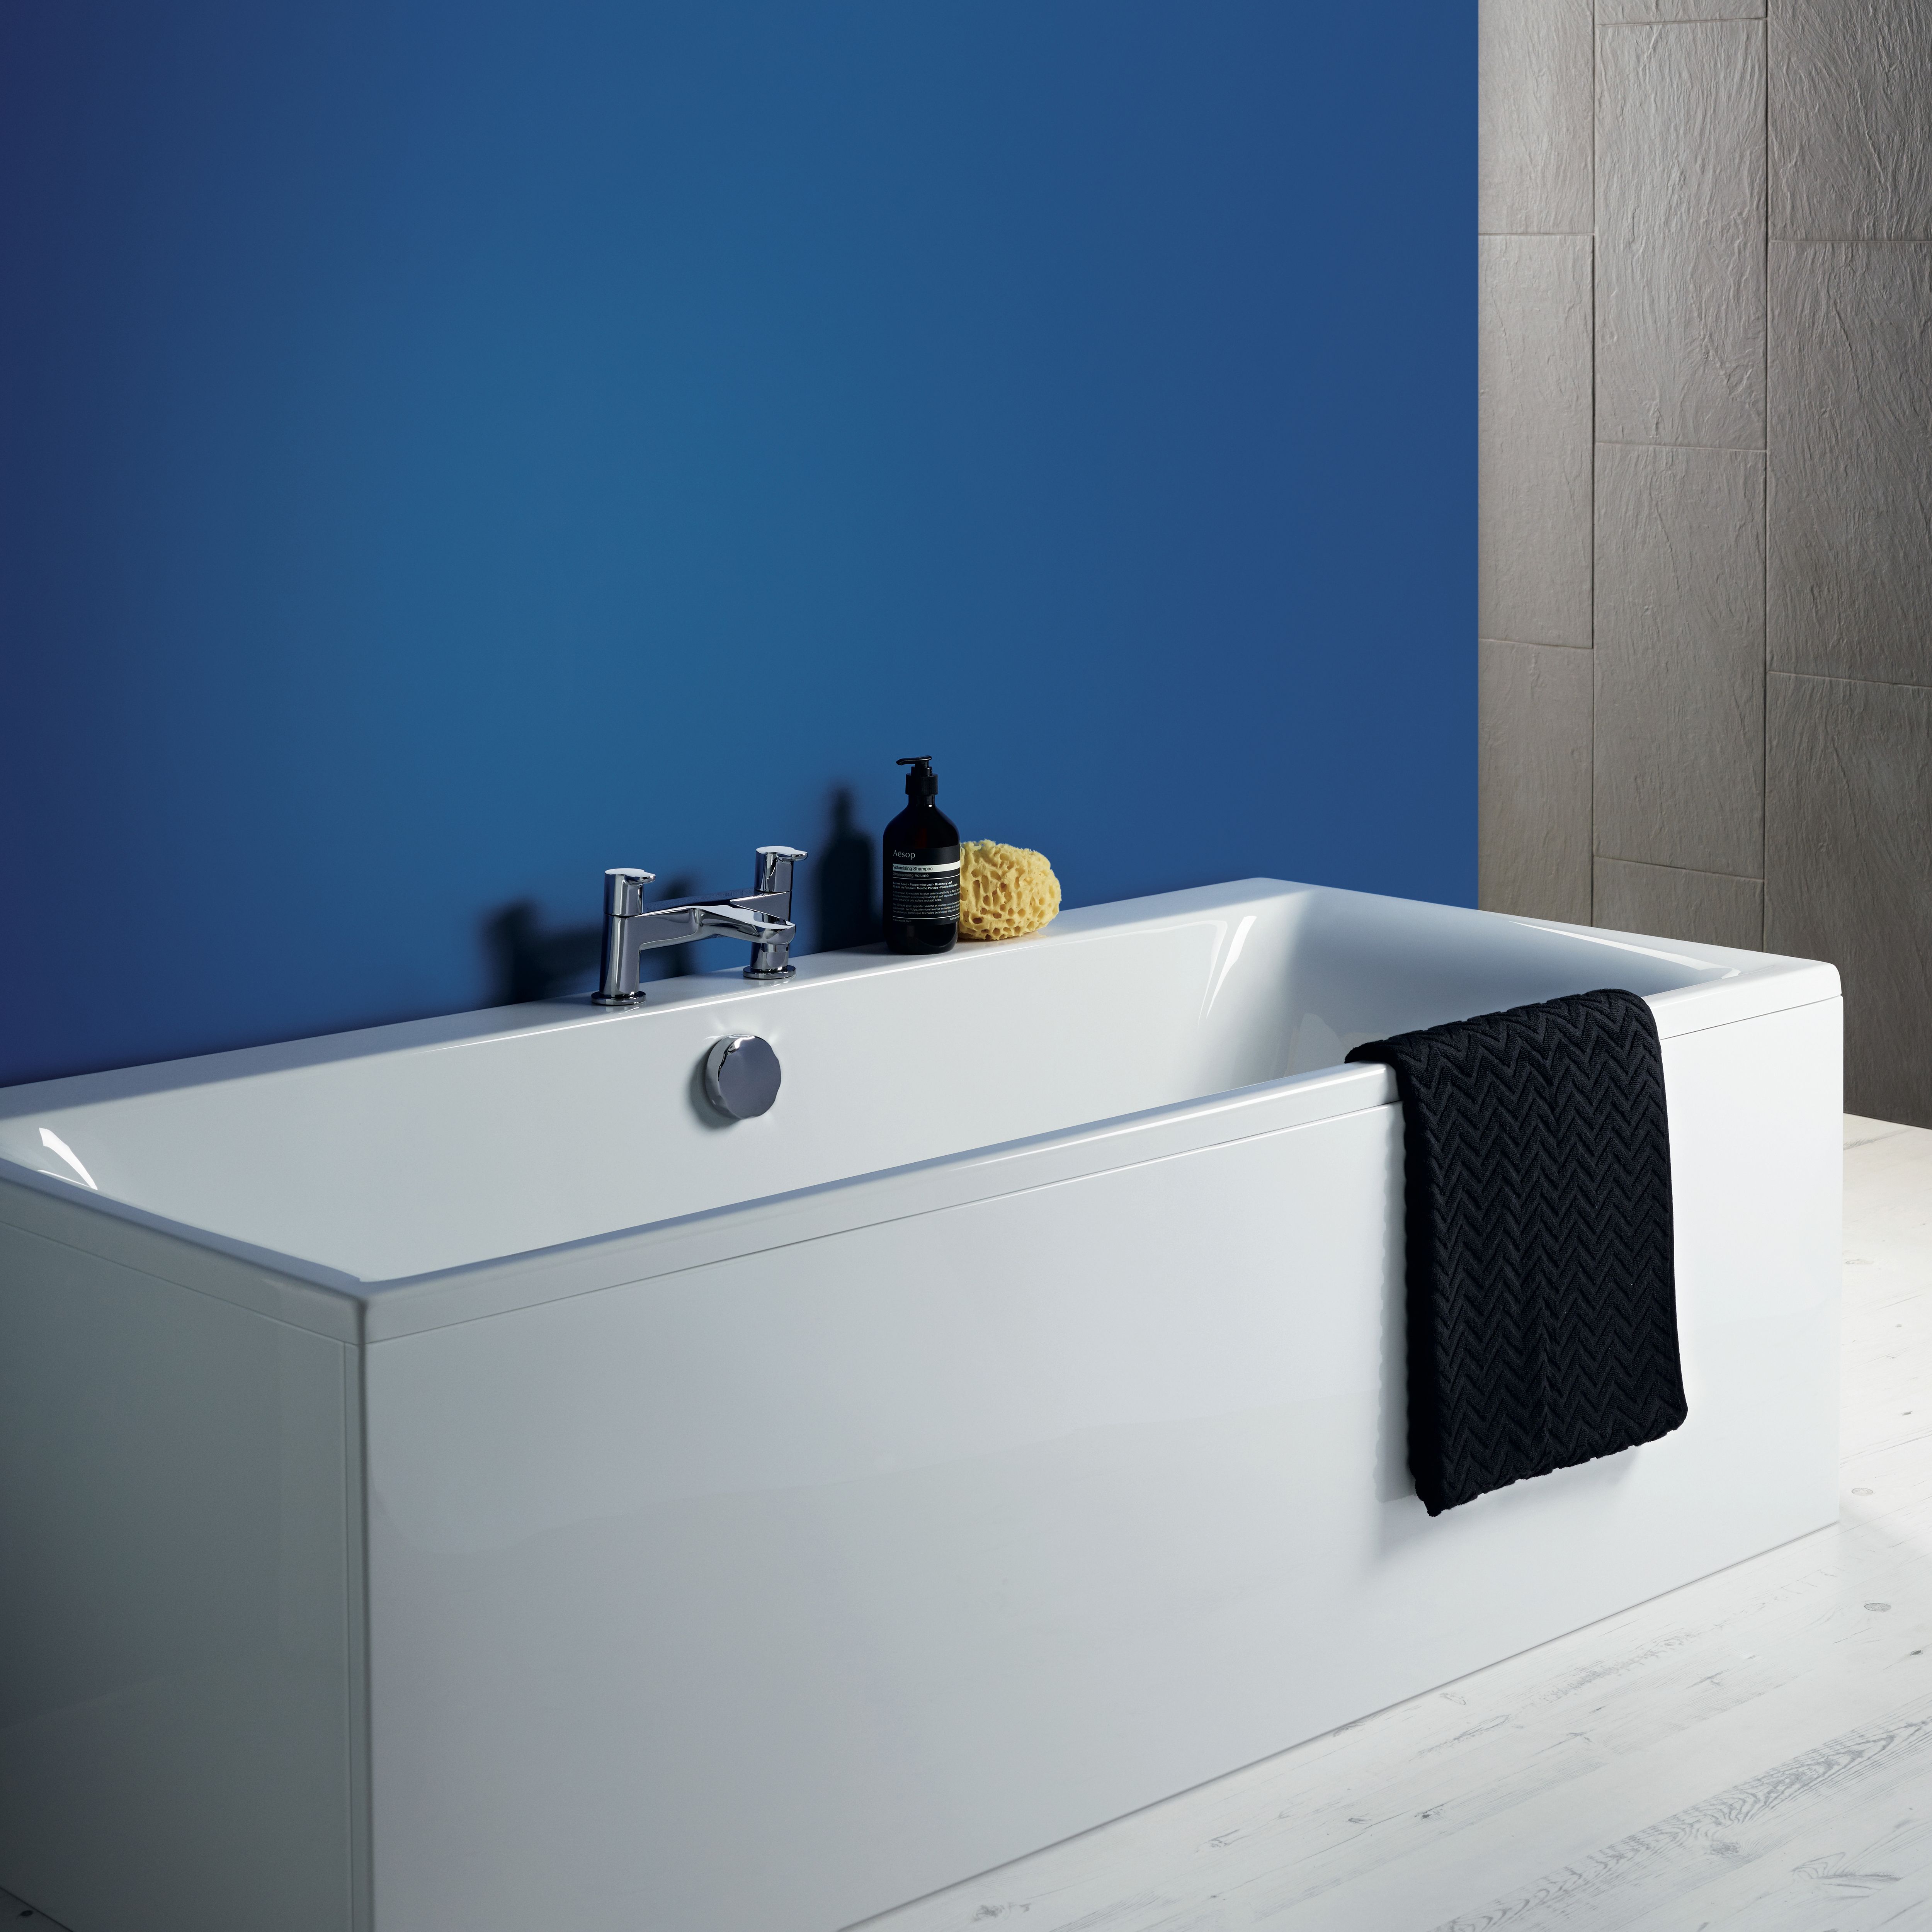 Ideal Standard Unilux Matt White Left or right-handed Rectangular Front Bath panel (H)51cm (W)170cm